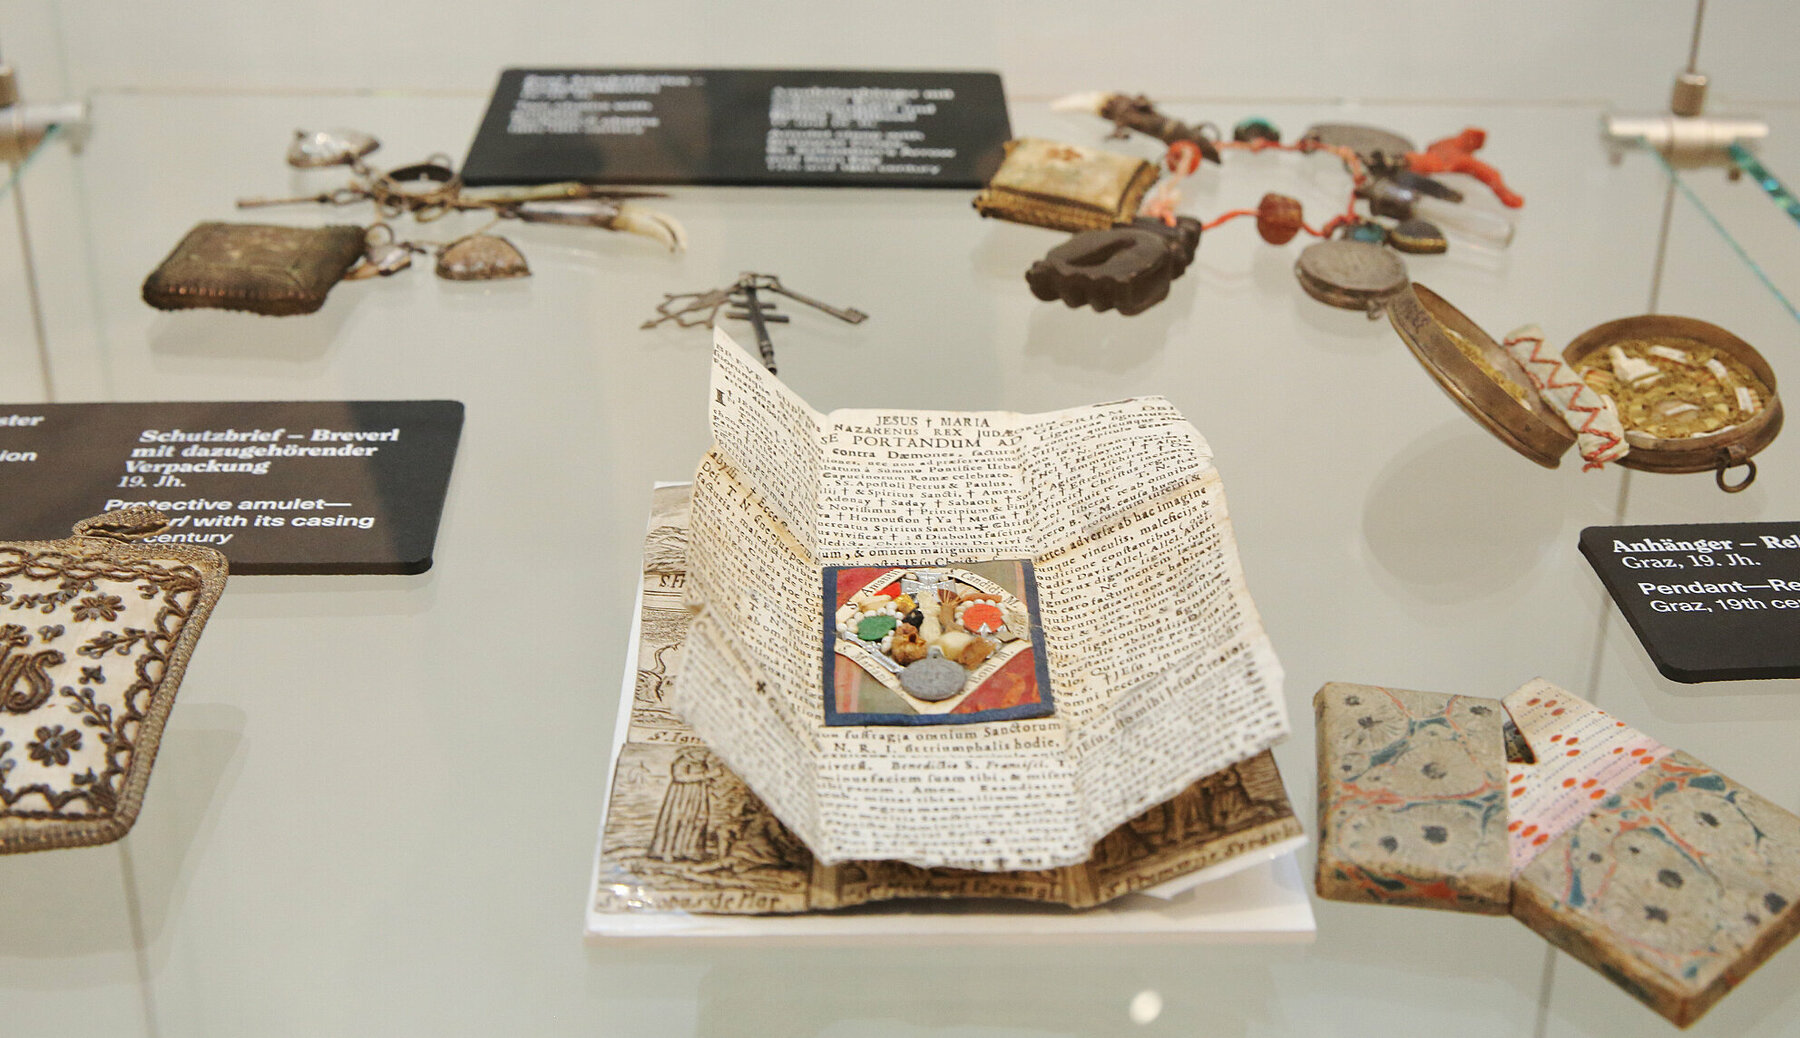 Ausstellungsansicht: historische Amulette und Schutzsegen auf Papier in einer Vitrine. Bis heute vertrauen Menschen auf einzelne Gegenstände oder Praktiken, die alle schädlichen Einflüsse abwehren sollen.